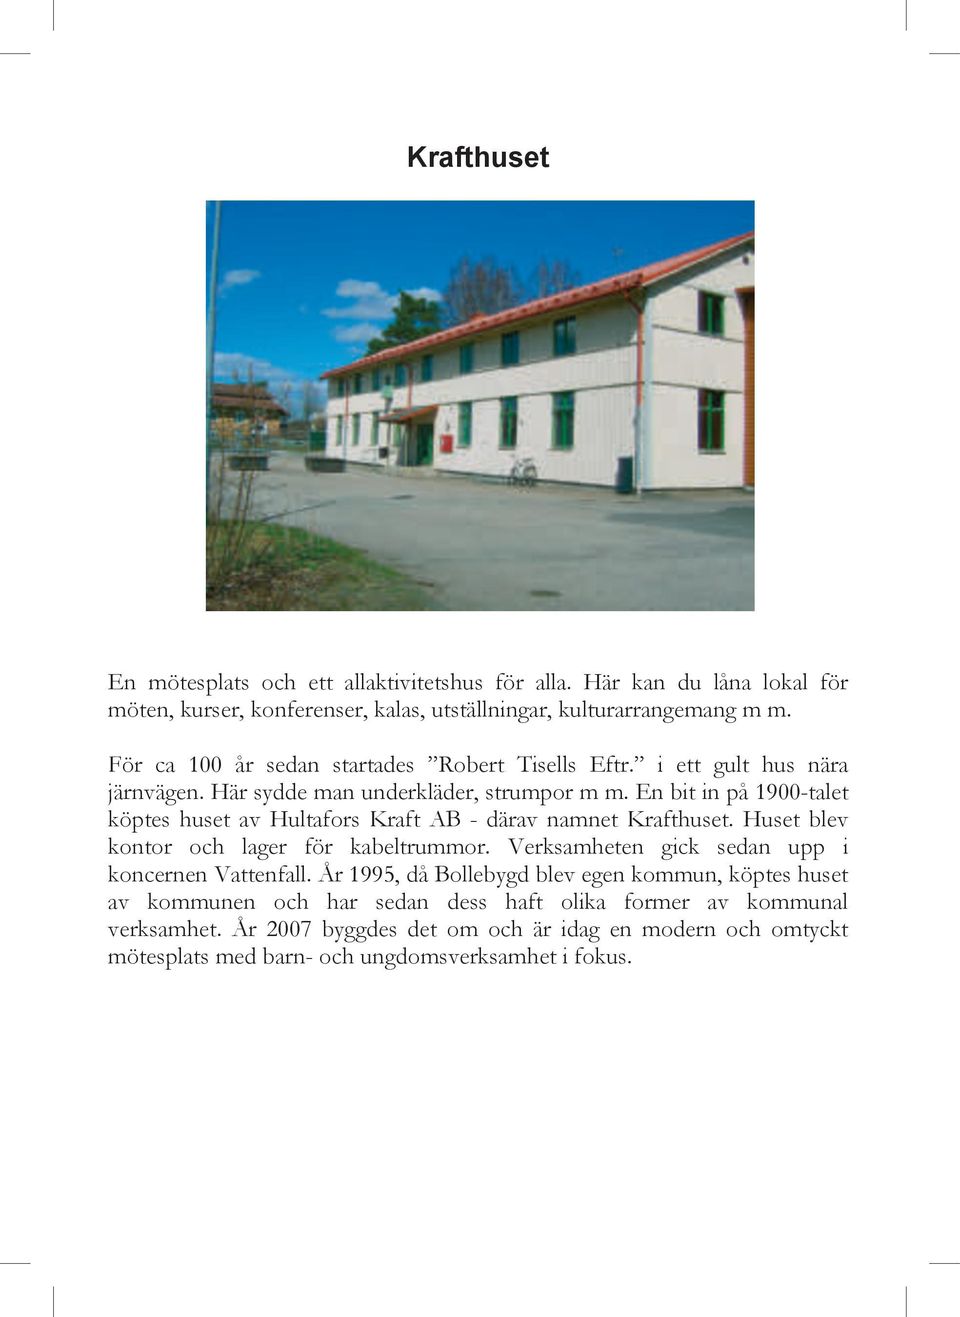 En bit in på 1900-talet köptes huset av Hultafors Kraft AB - därav namnet Krafthuset. Huset blev kontor och lager för kabeltrummor.